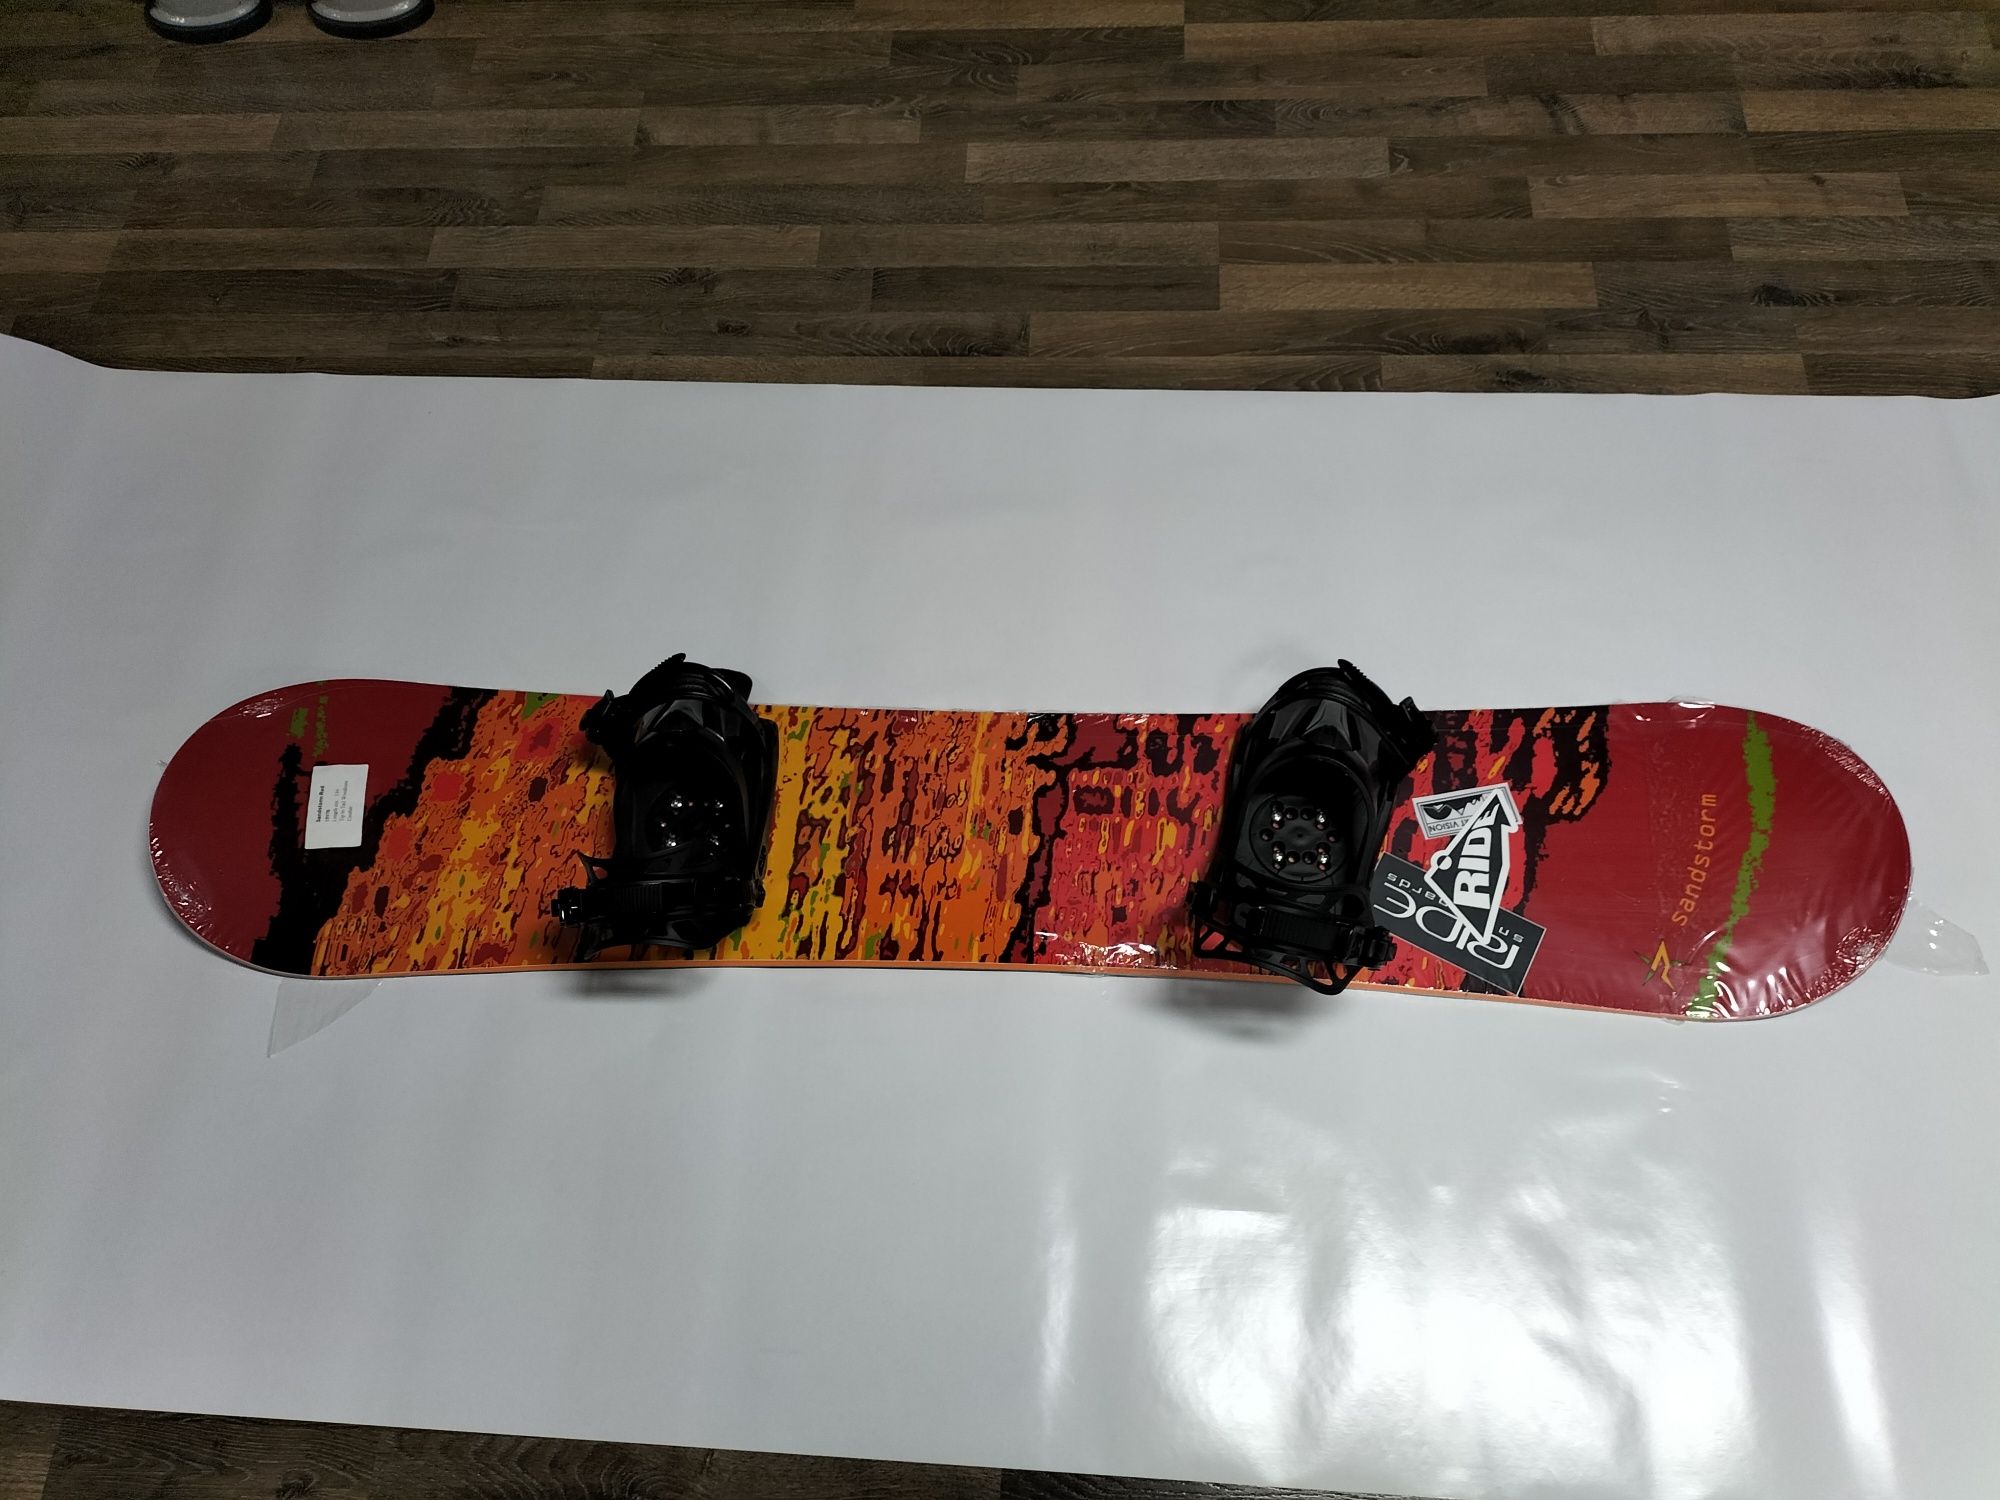 Snowboard Sandstorm Red + Legături noua